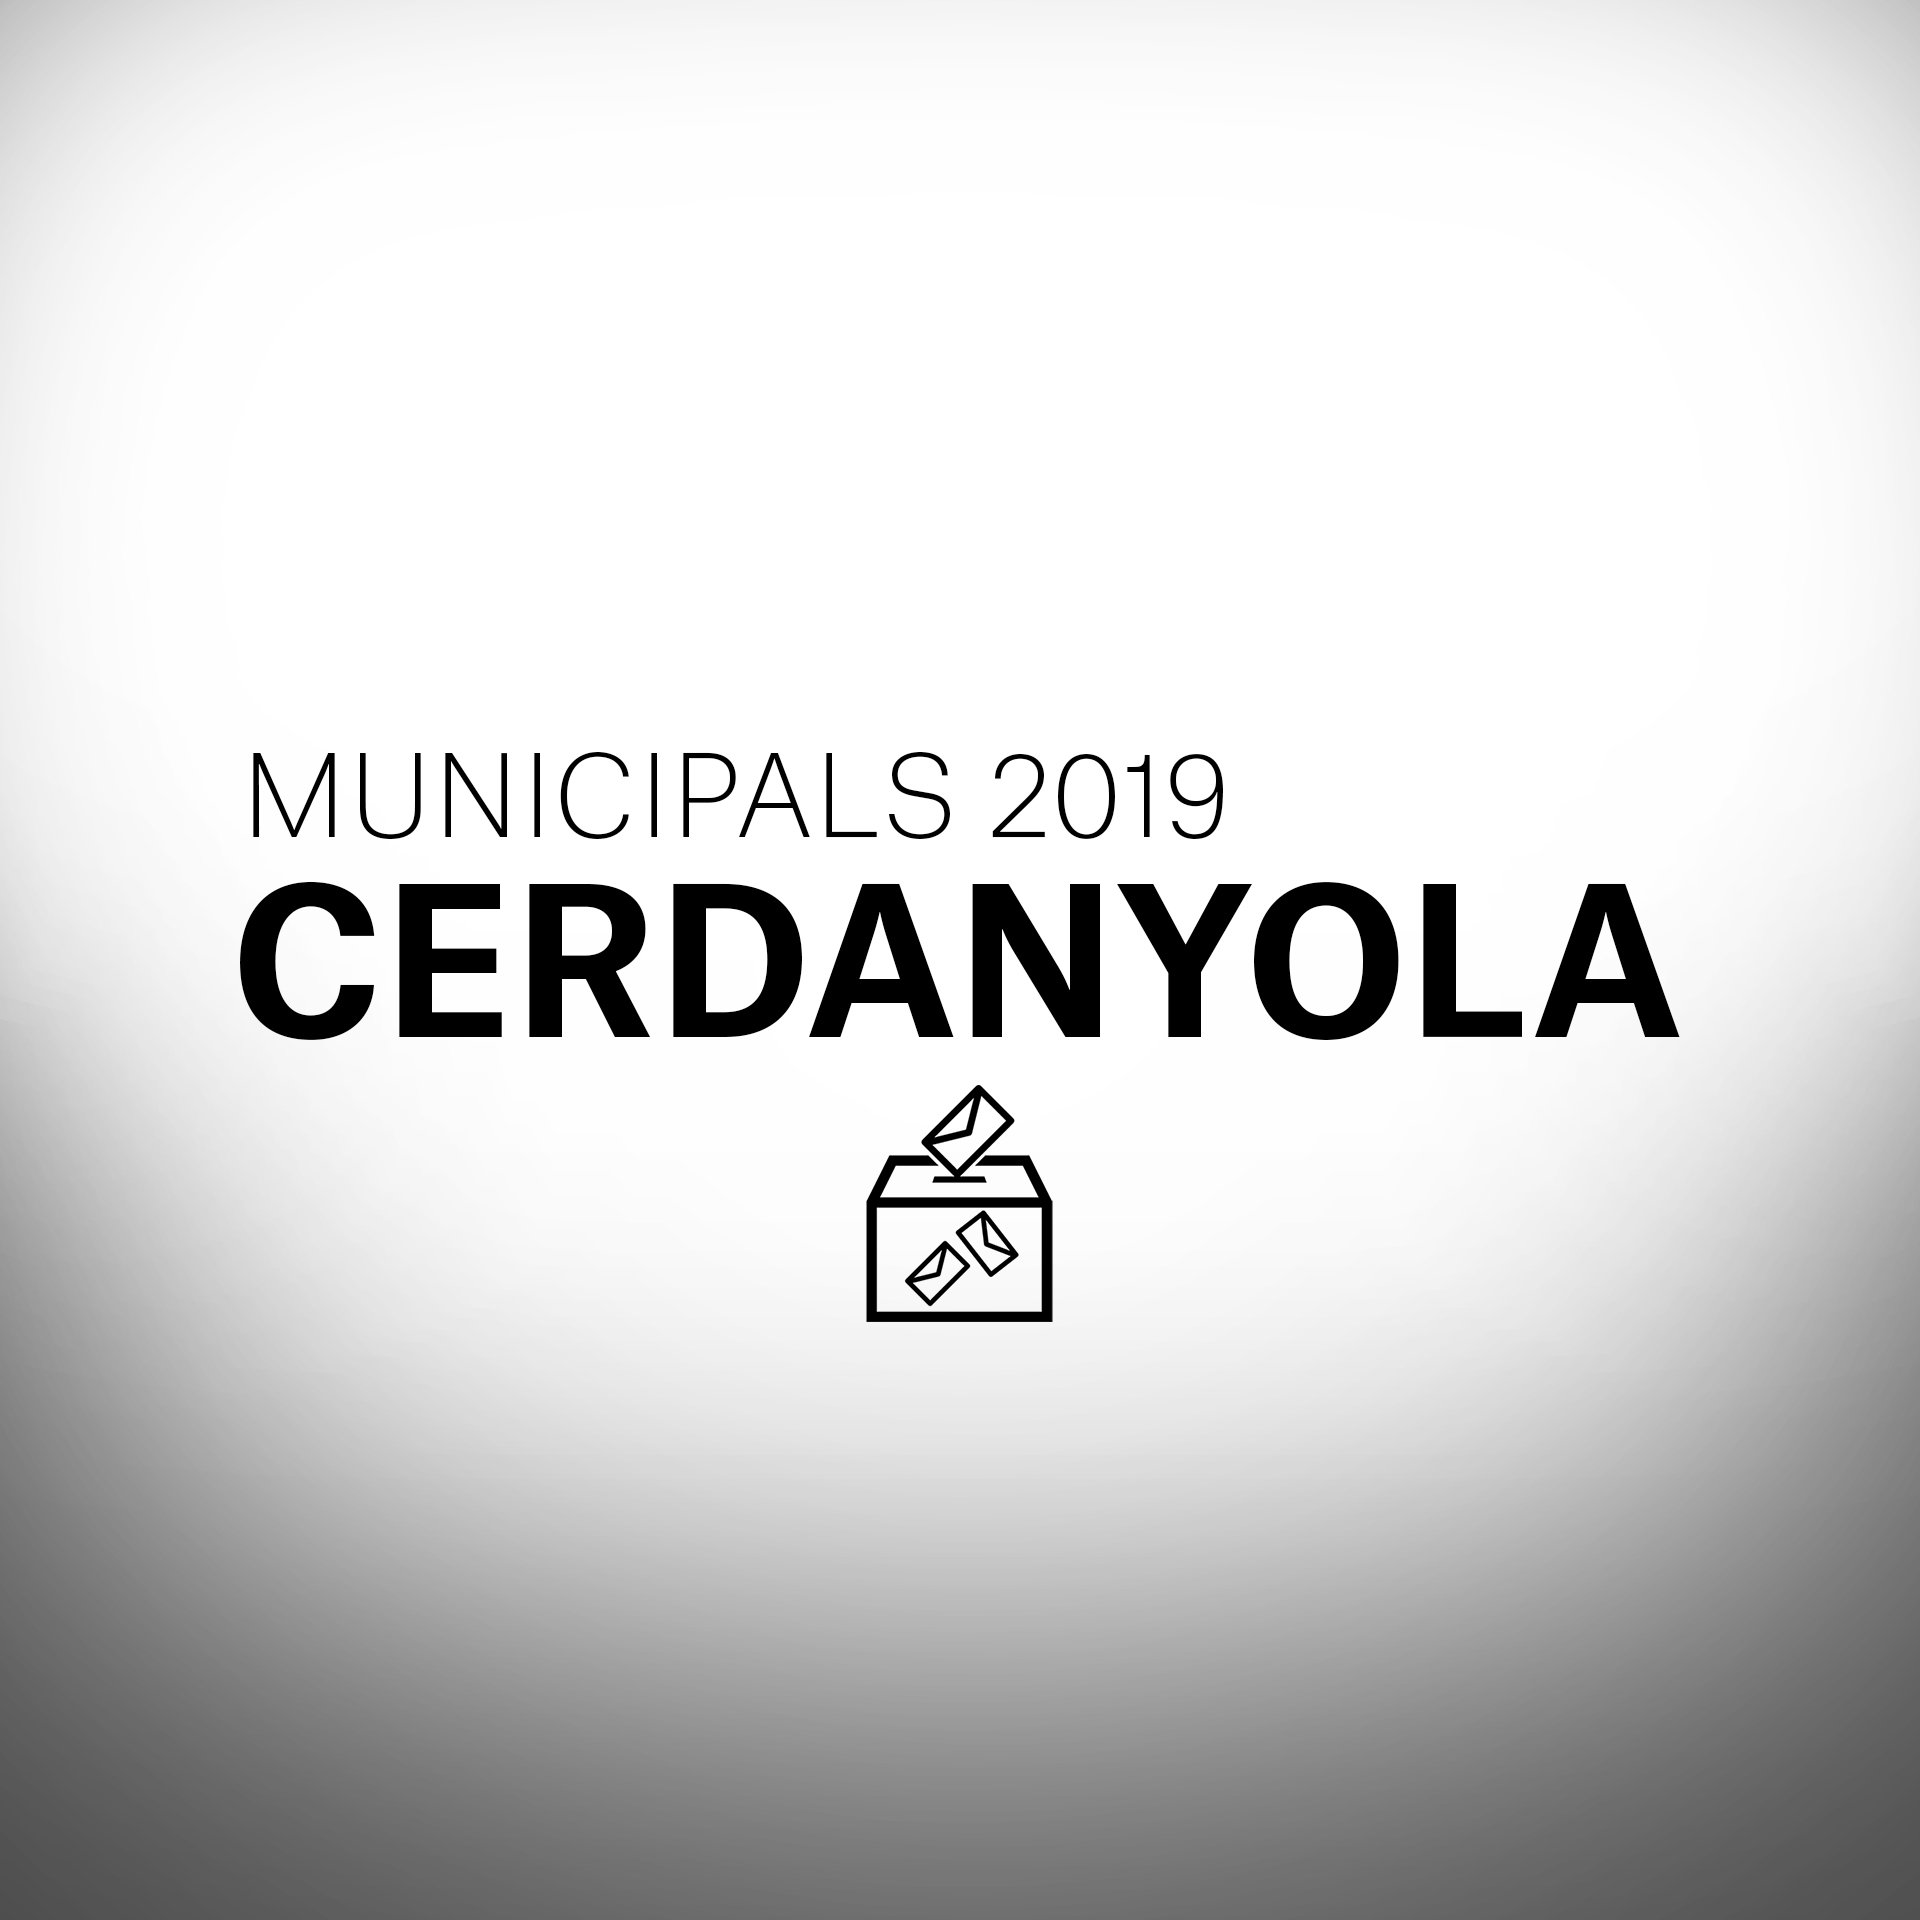 ¿Qué pasará en las elecciones municipales en Cerdanyola?